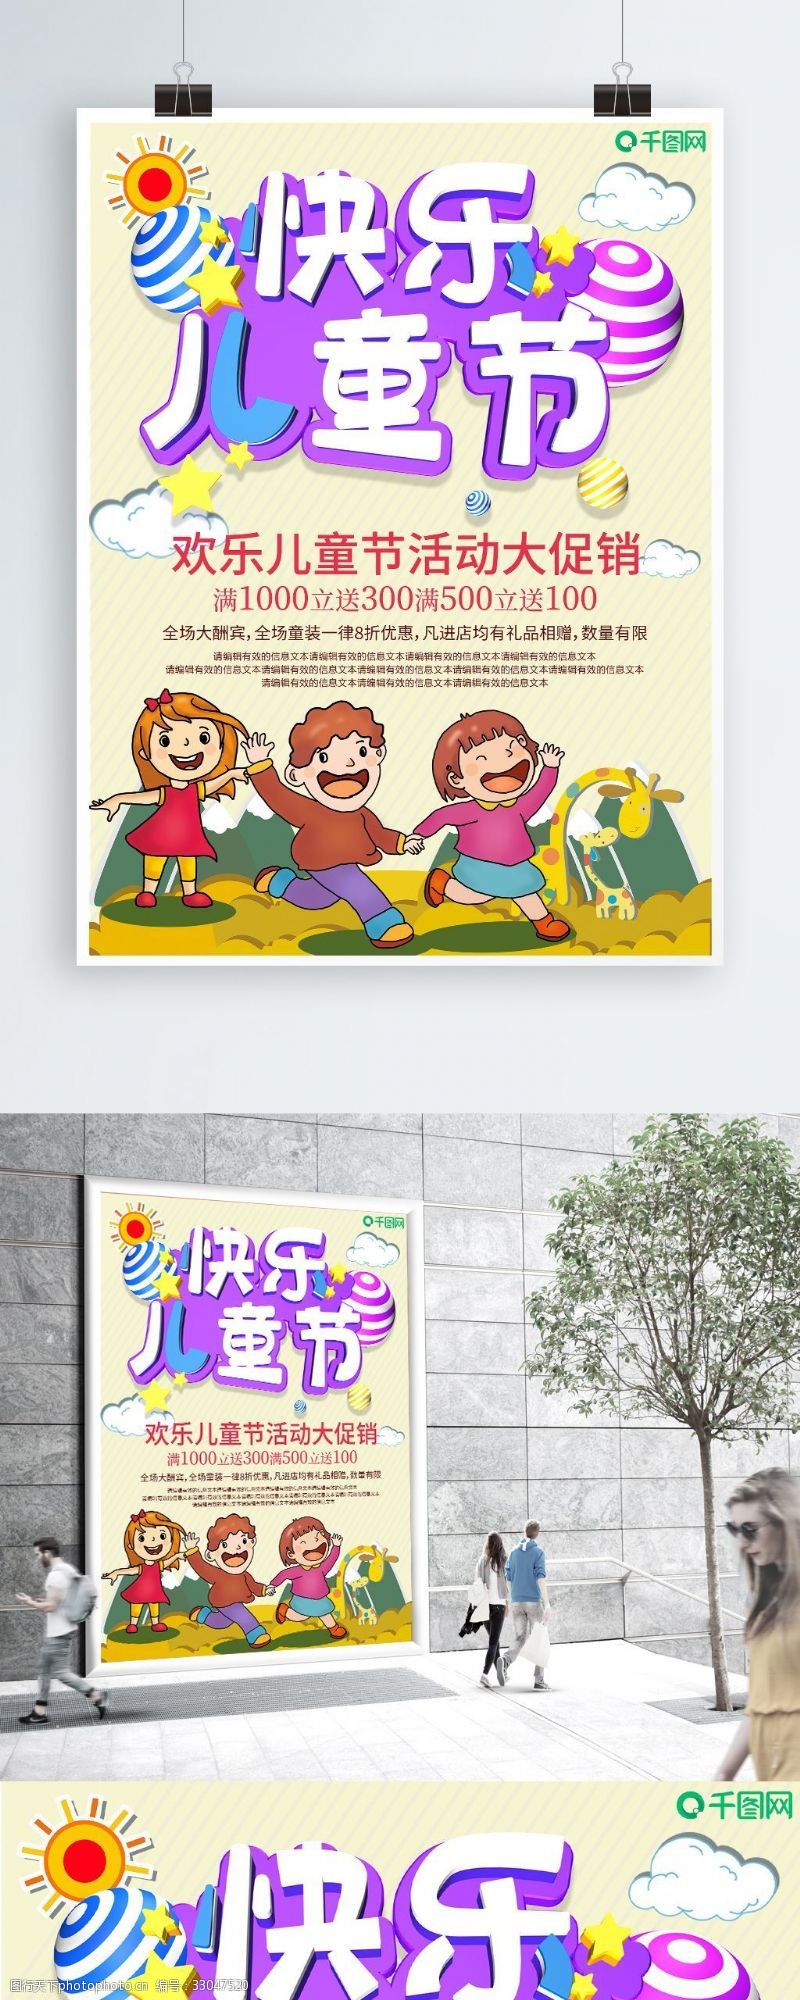 超市儿童节创意儿童节宣传海报